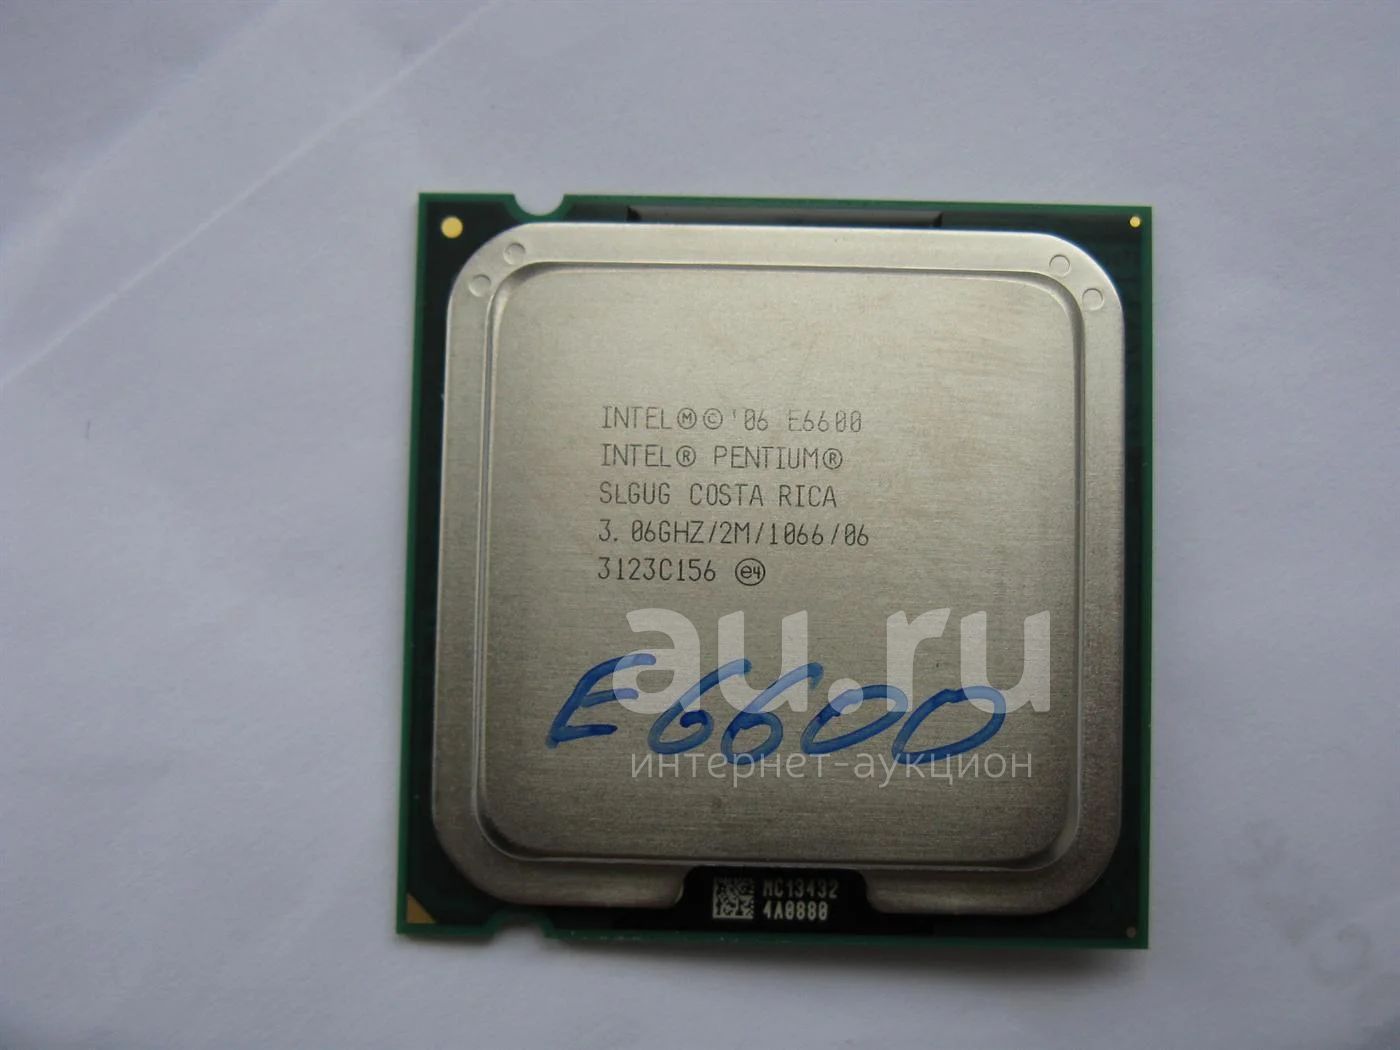 Pentium e6600 gta 5